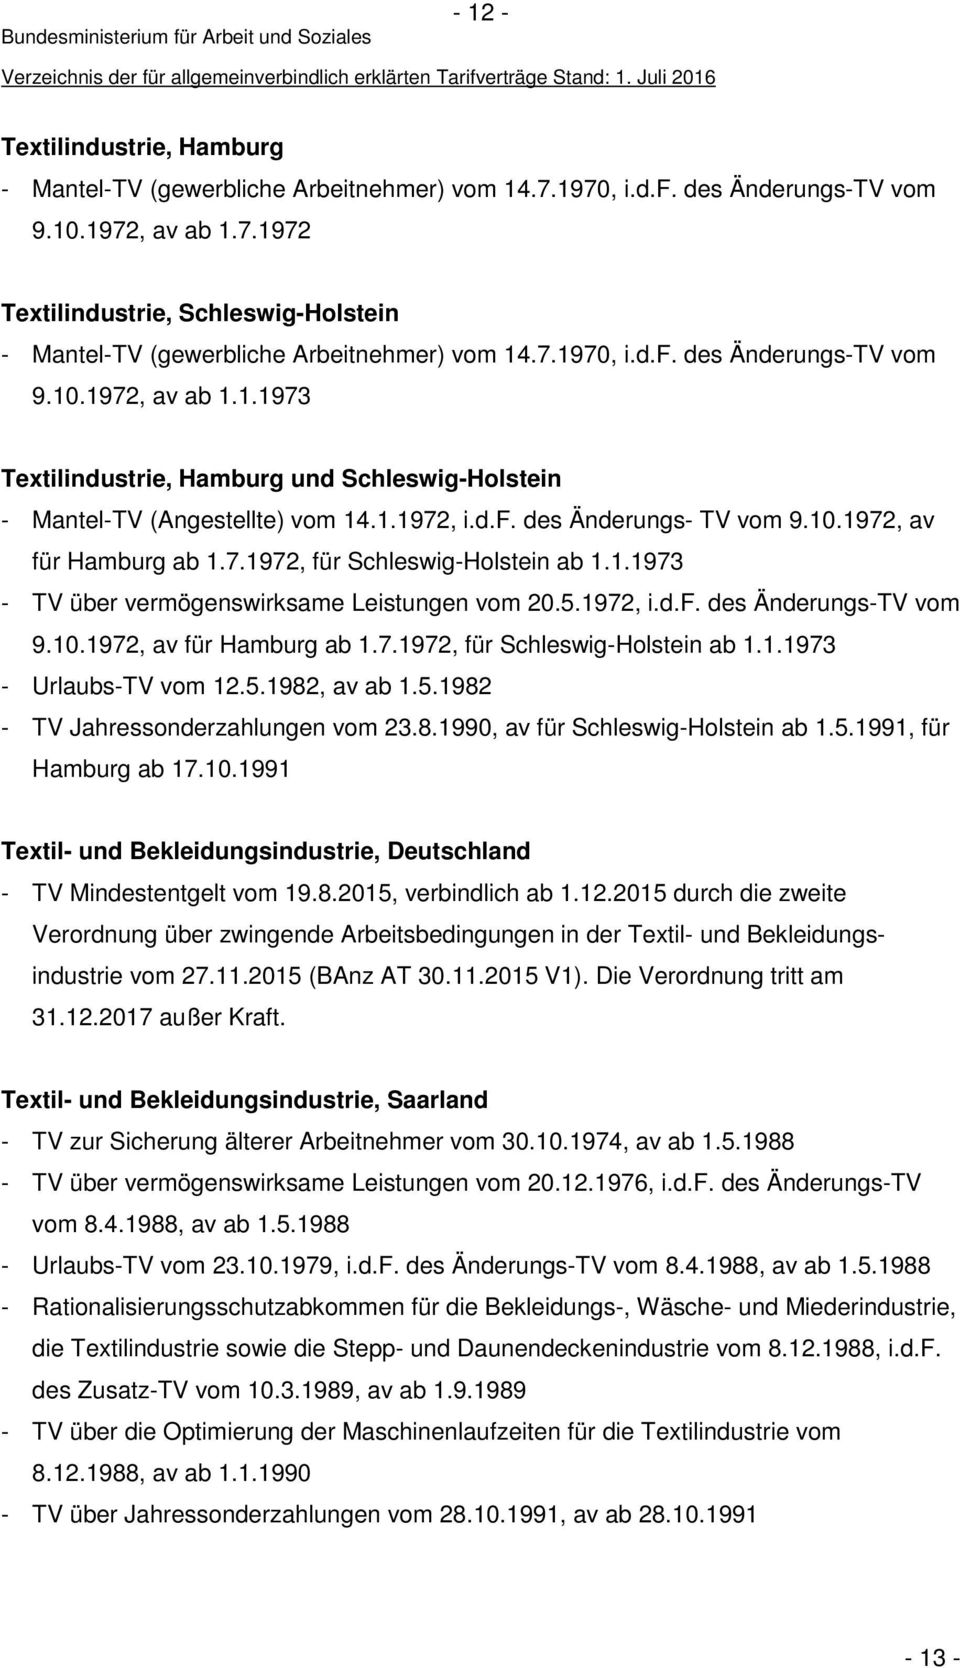 7.1972, für Schleswig-Holstein ab 1.1.1973 - TV über vermögenswirksame Leistungen vom 20.5.1972, i.d.f. des Änderungs-TV vom 9.10.1972, av für Hamburg ab 1.7.1972, für Schleswig-Holstein ab 1.1.1973 - Urlaubs-TV vom 12.